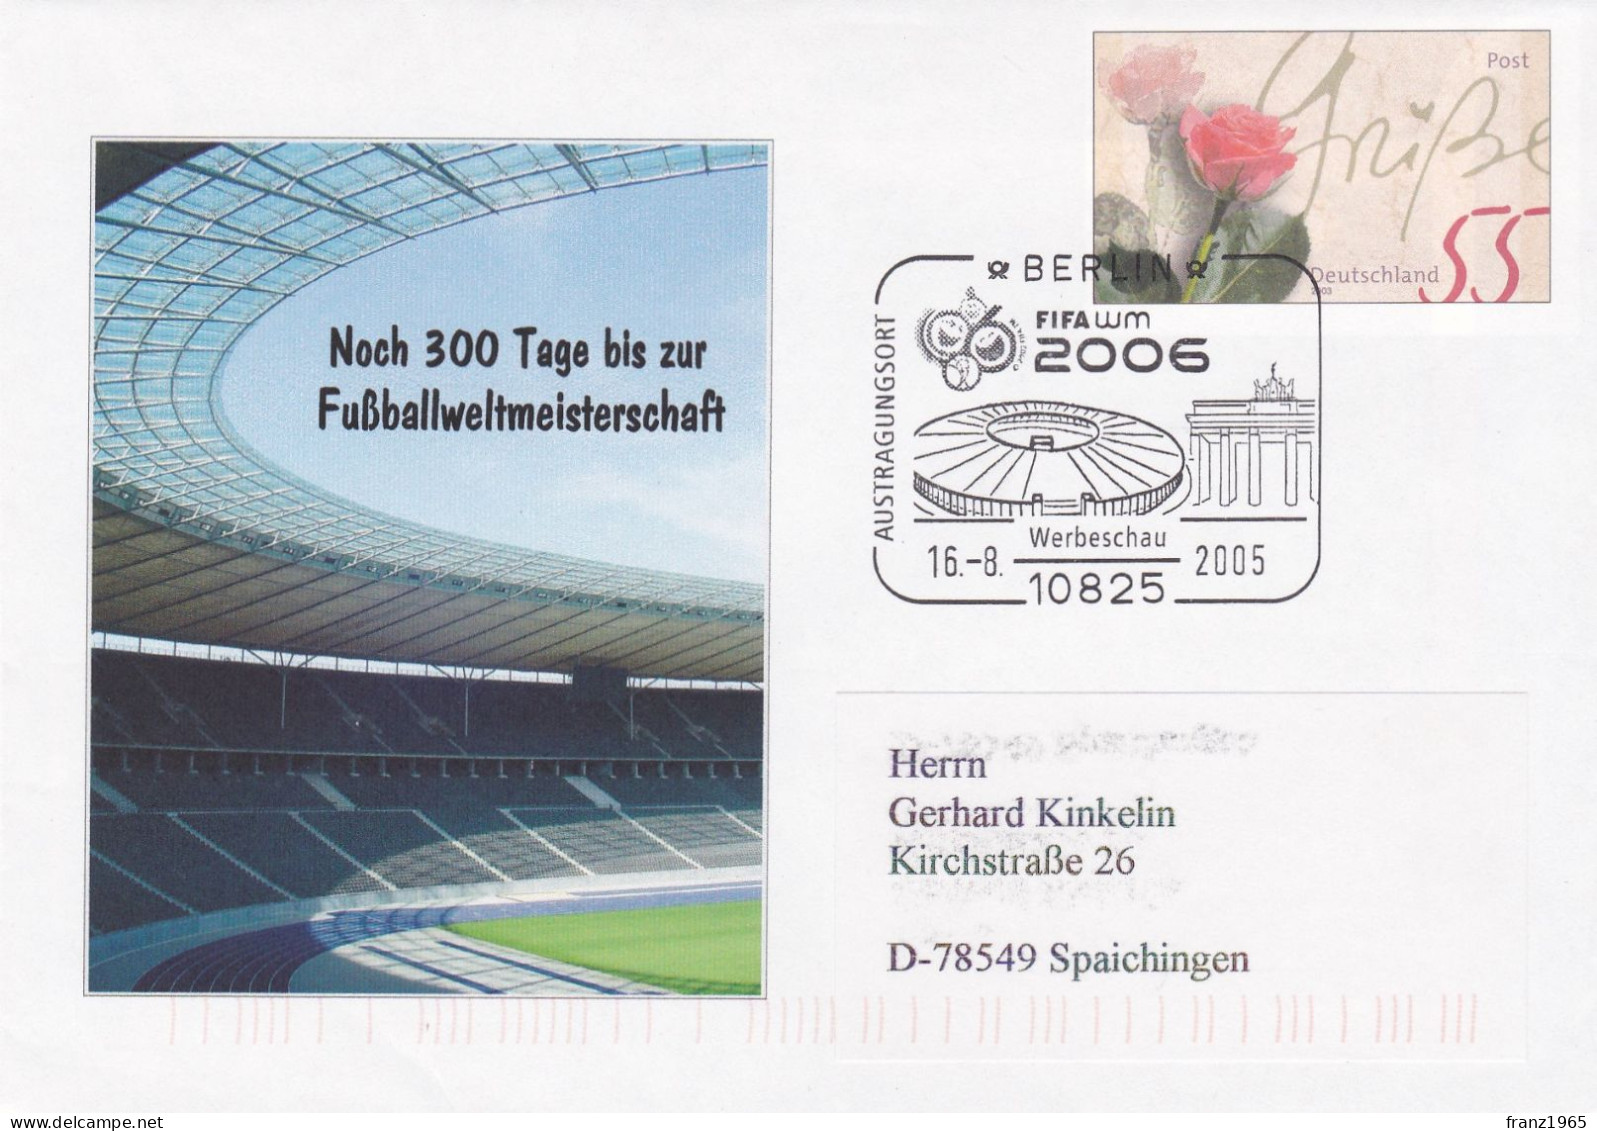 FIFA-WM 2006 - Berlin,16.8.2005 - 2006 – Duitsland